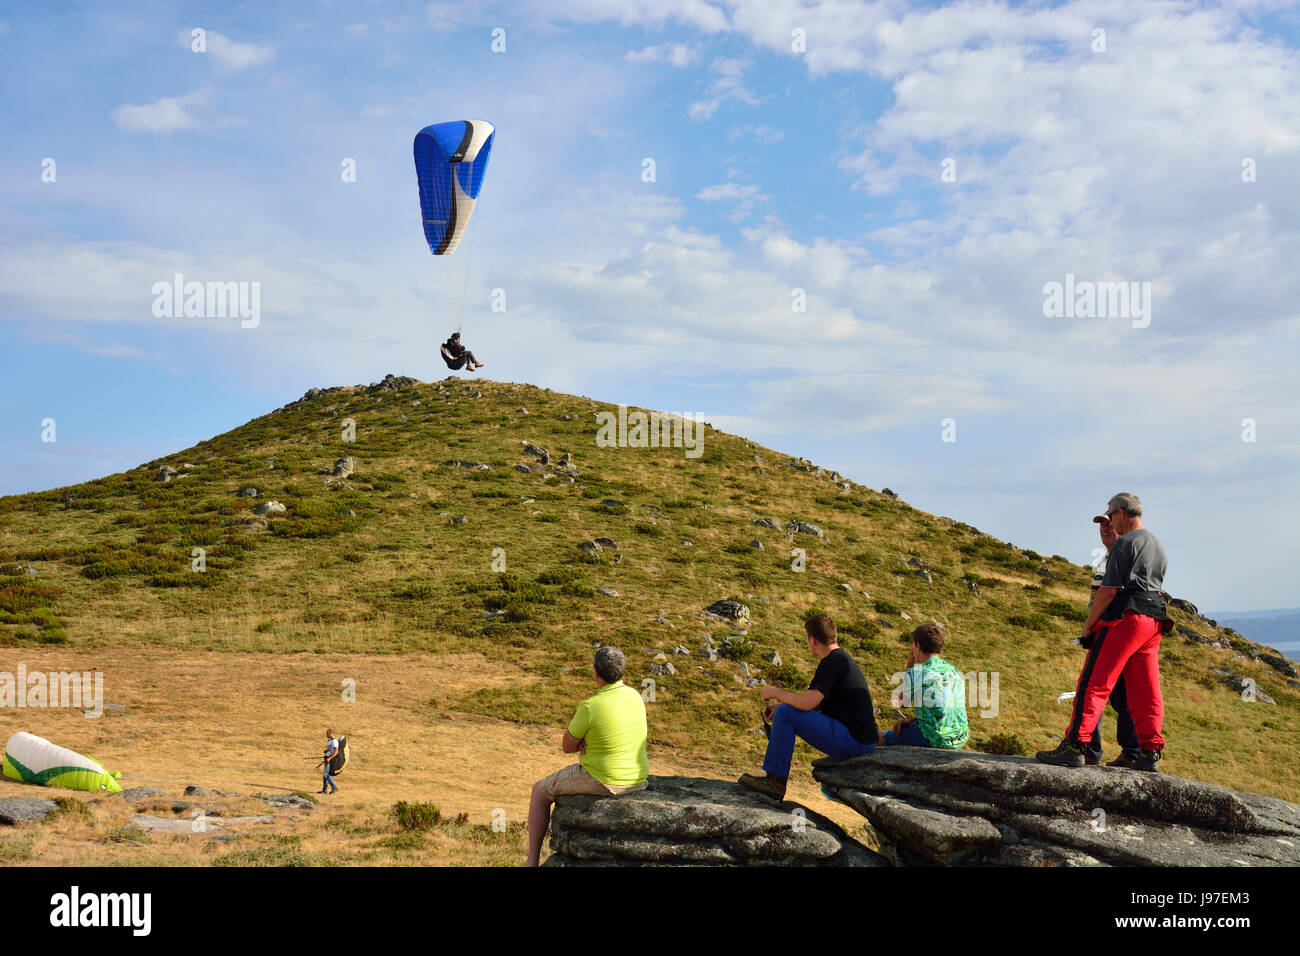 El parapente en Larouco montañas durante la Copa del Mundo de Parapente. Montalegre, Portugal Foto de stock